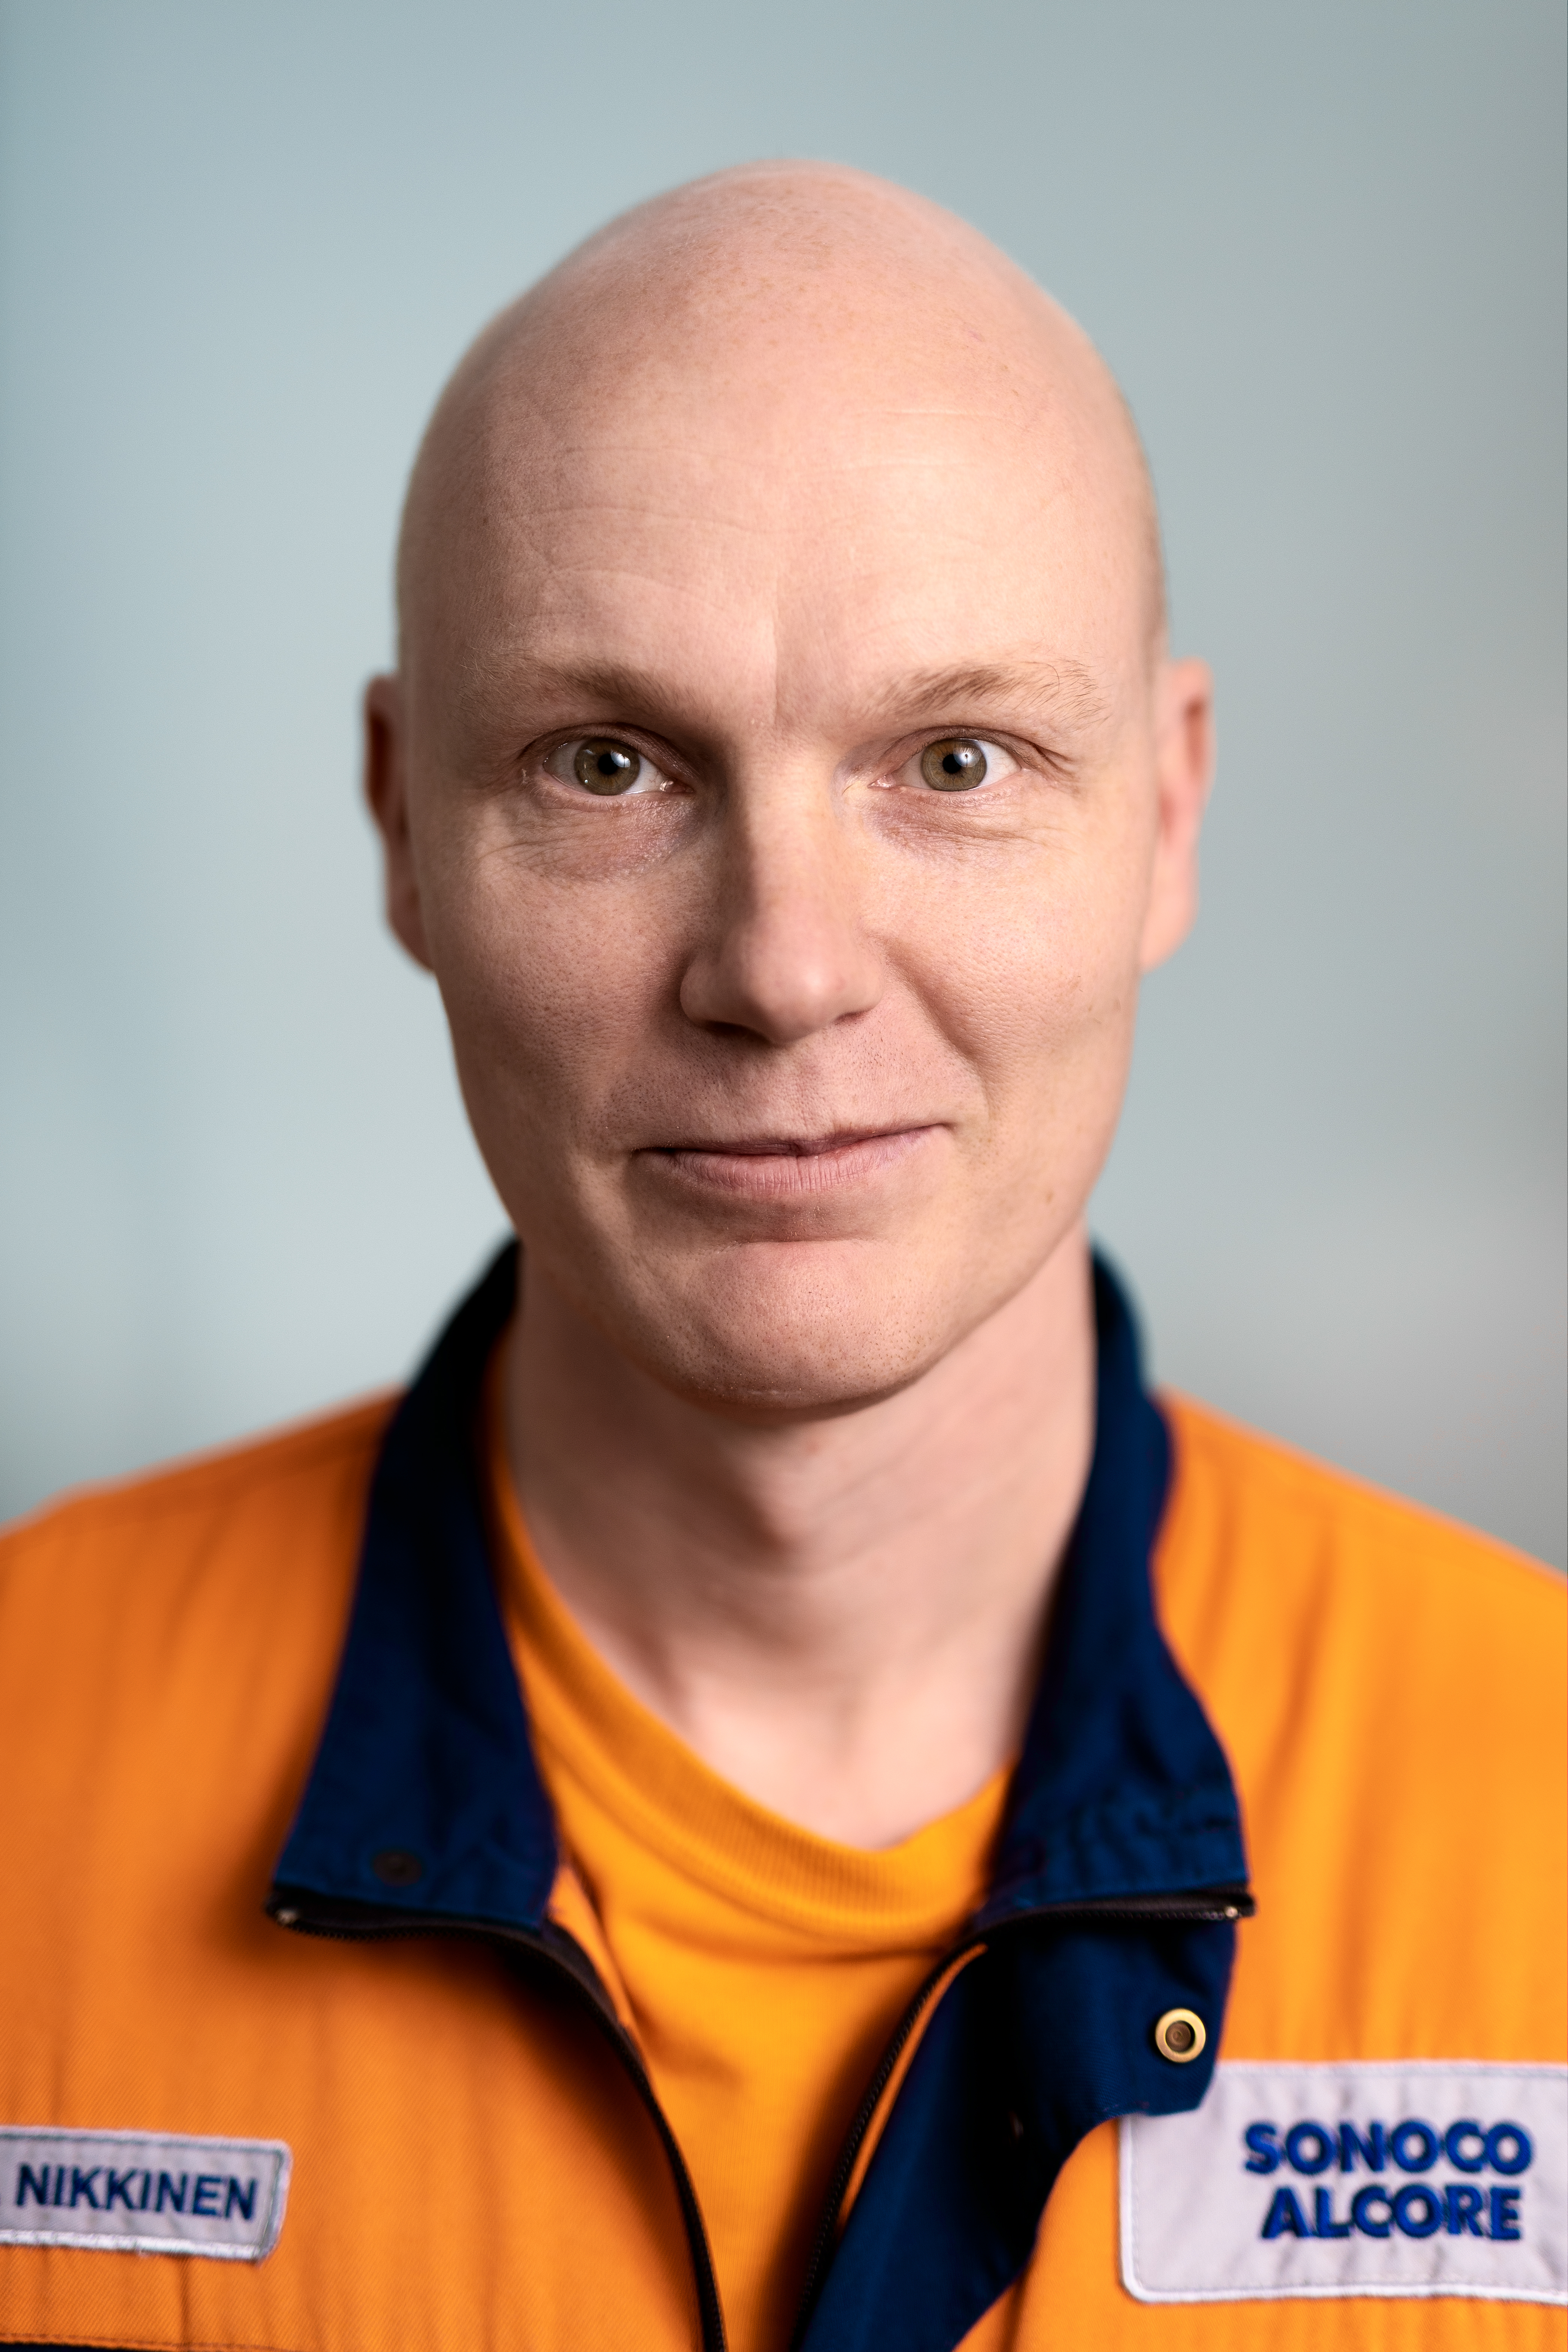 Mika Nikkinen on kartonkikoneen hoitaja Sonoco Alcorella Kotkassa.